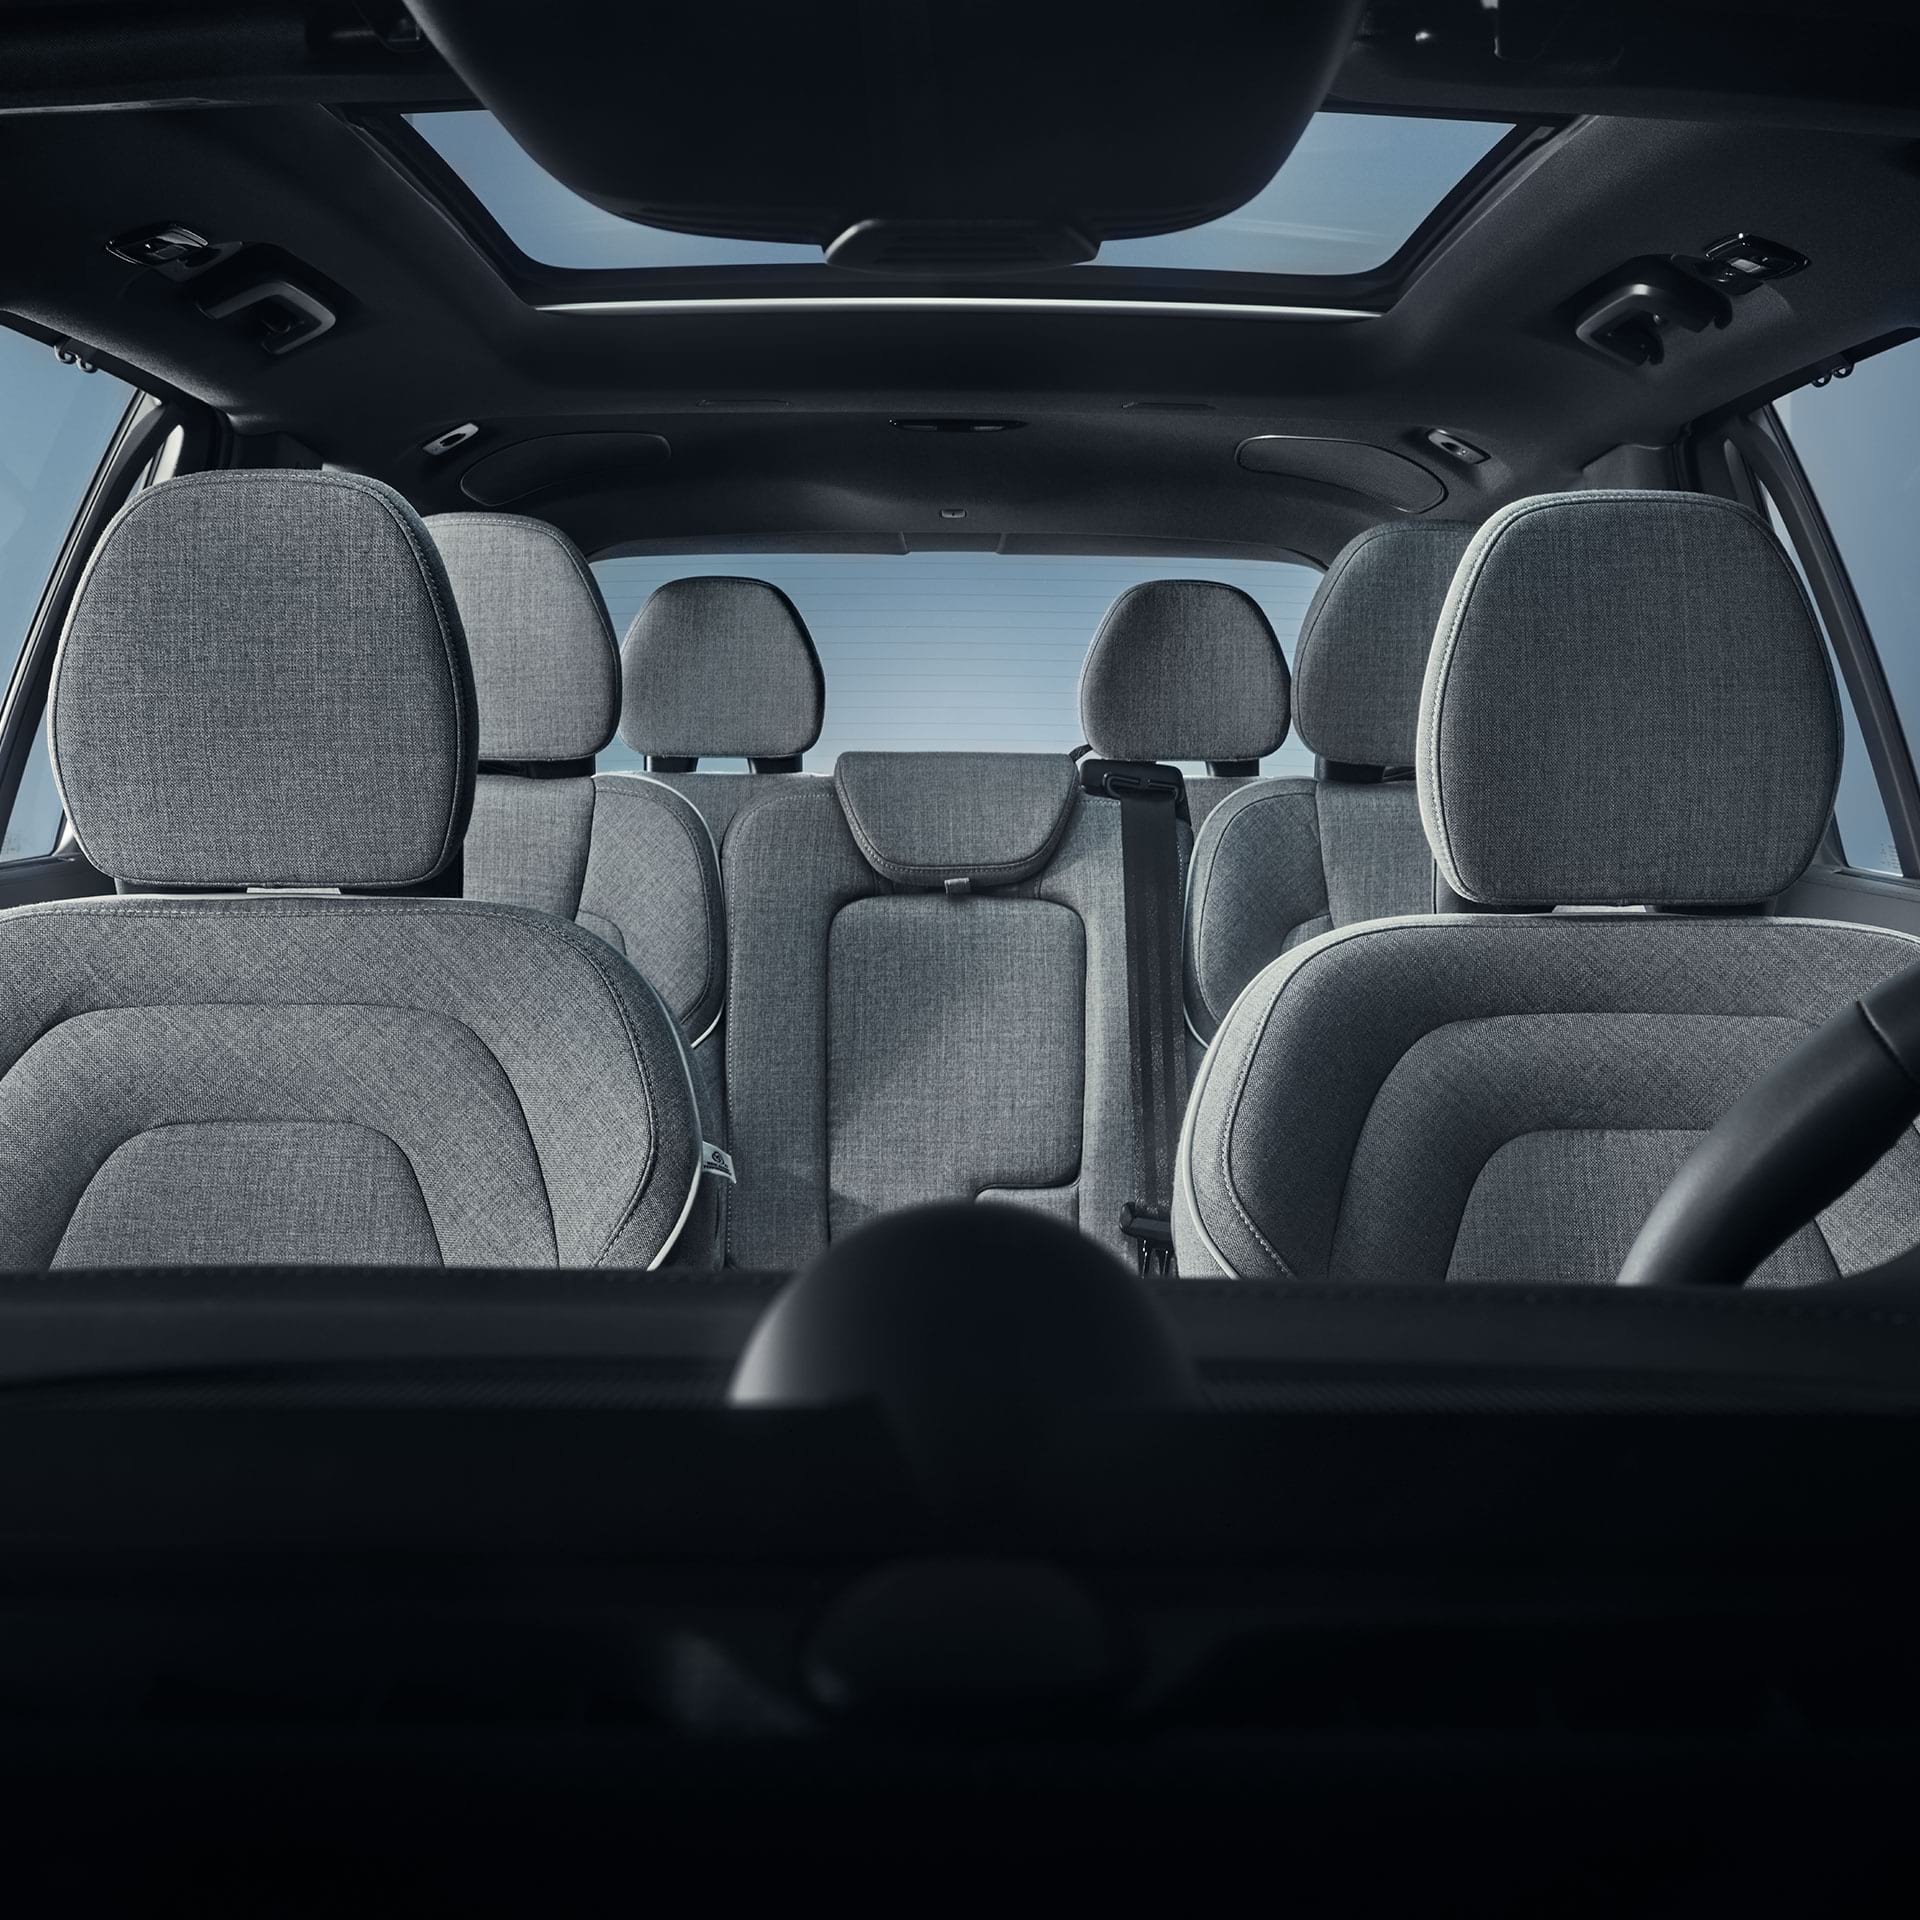 Prostorna in razkošna notranjost kabine vozila Volvo XC90 Recharge.